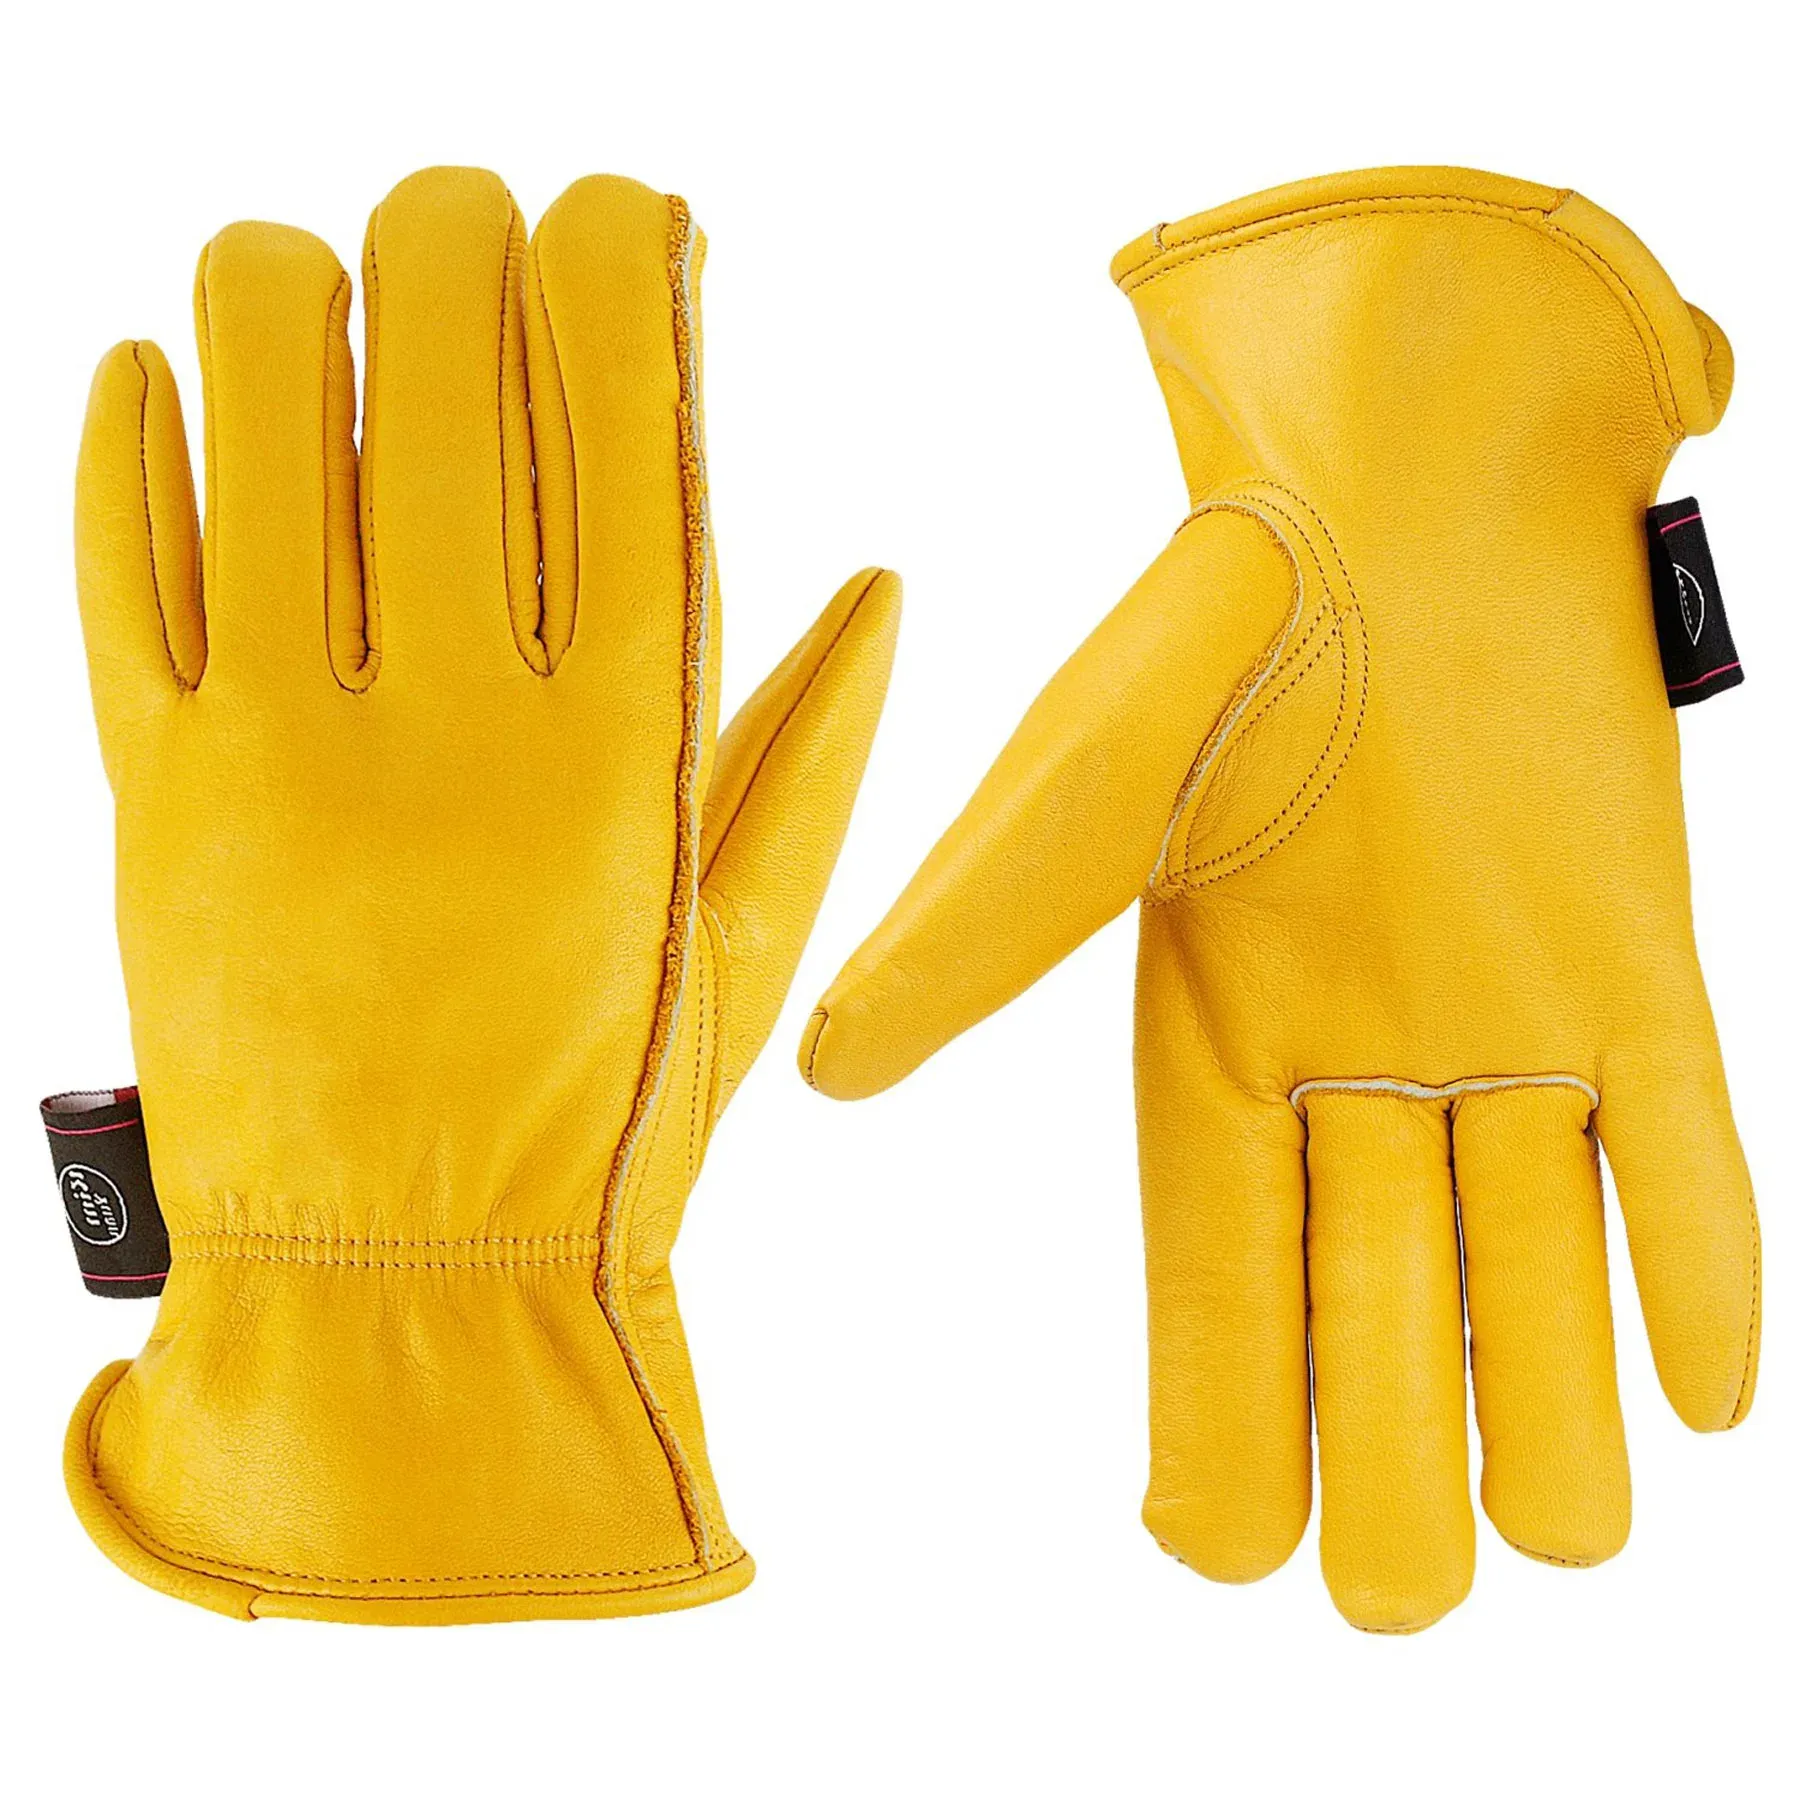 Handschuhe Vgarden Handschuhe Thorn Proof 1 Paar Gartenhandschuhe Kowide Lederarbeit Handschuh Großhandel